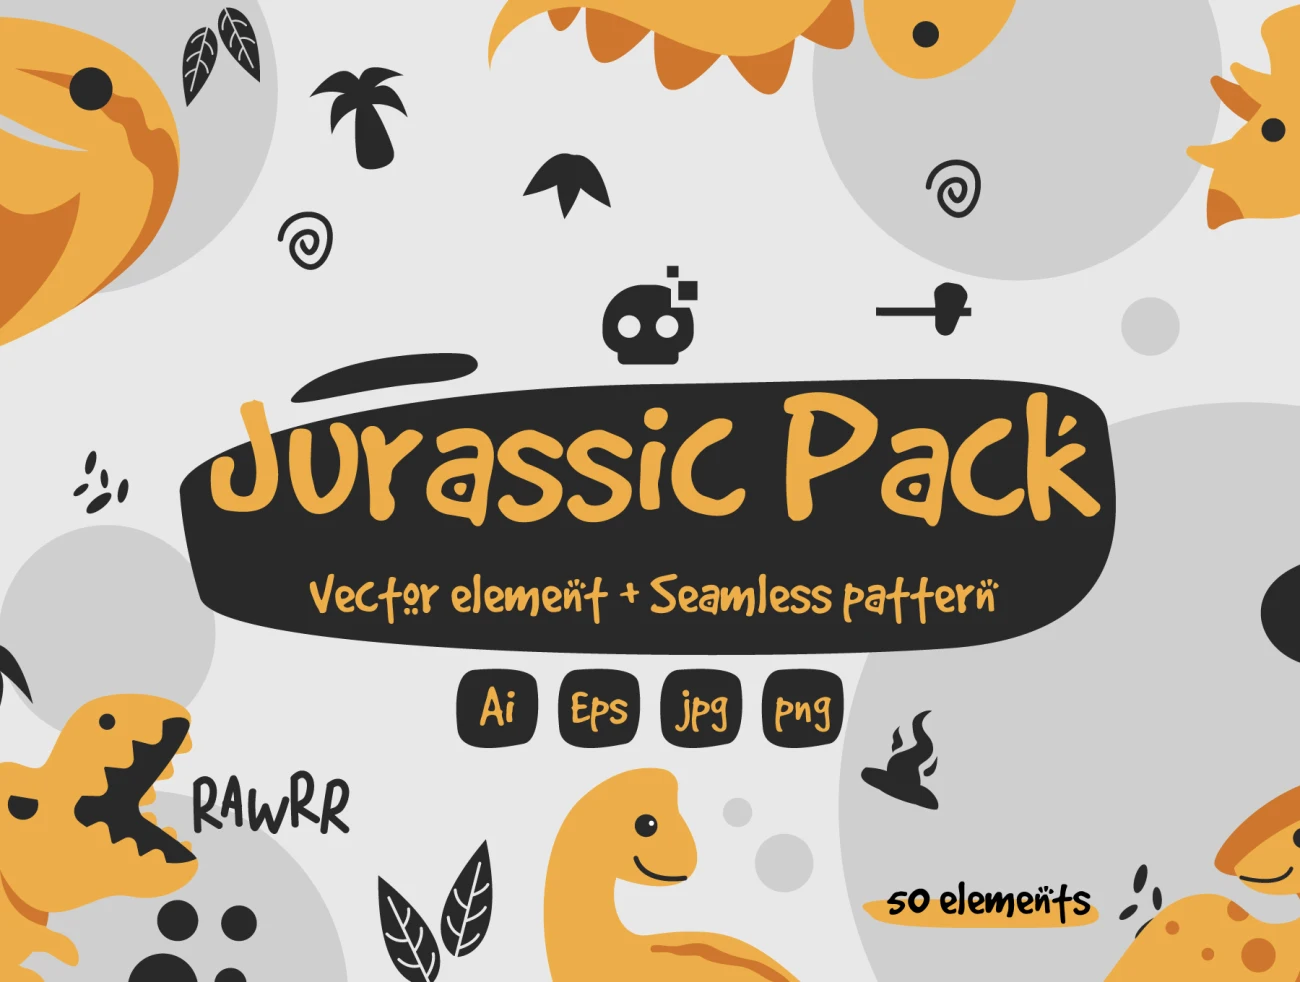 14款侏罗纪公园恐龙插画矢量图案素材 Jurassic Pack Graphic & Pattern Element .ai插图1